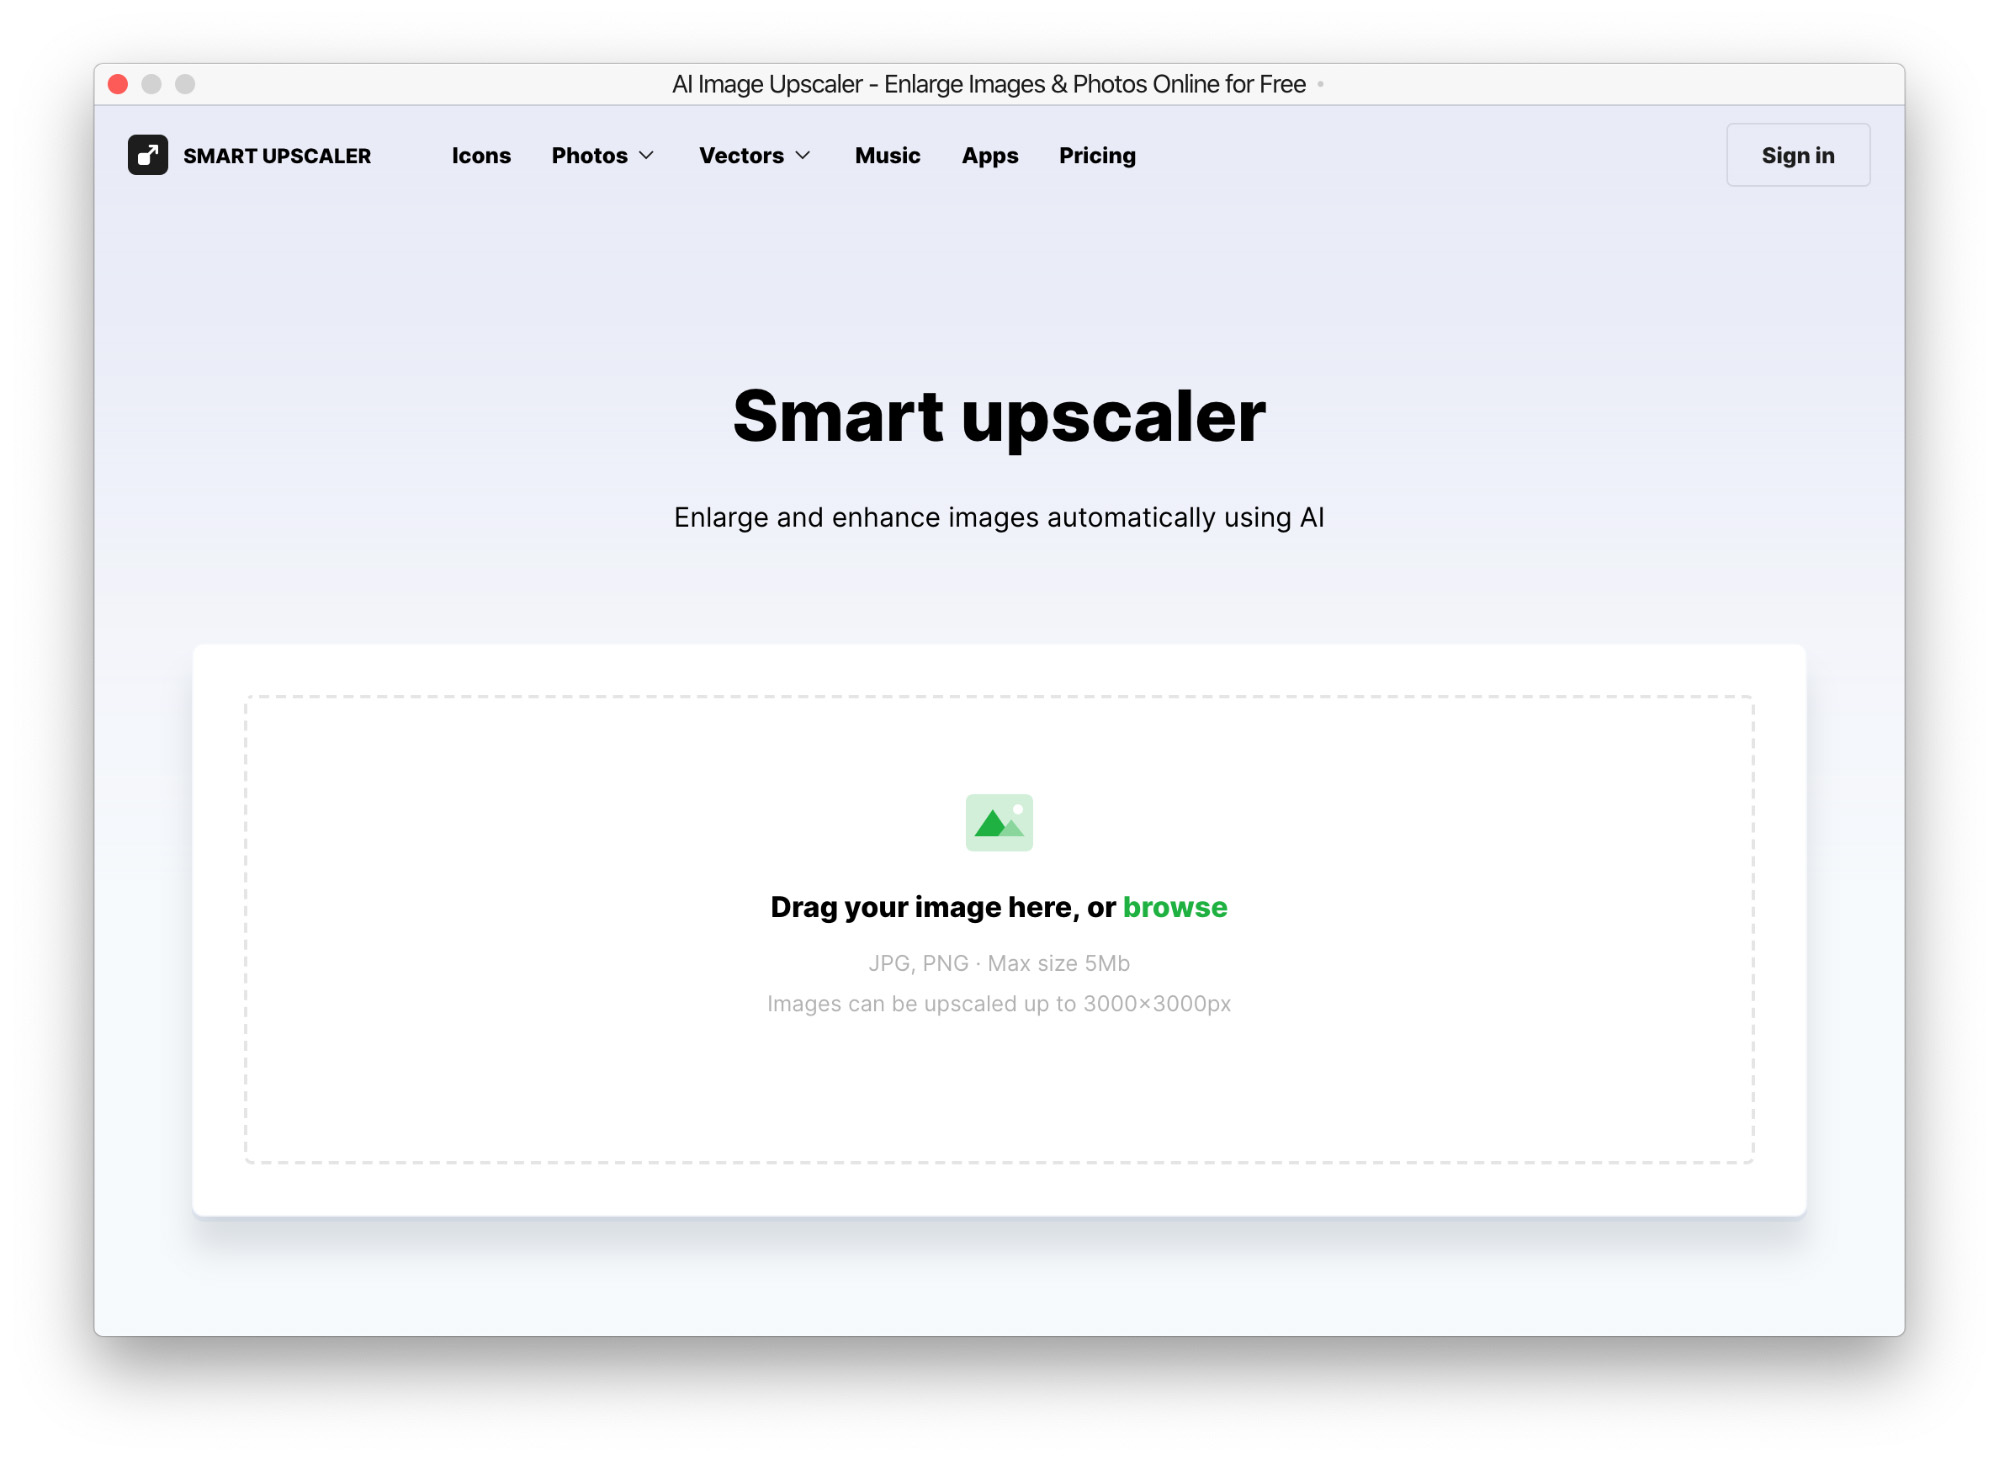 Бесплатный улучшатель картинок Smart upscaler от icon8